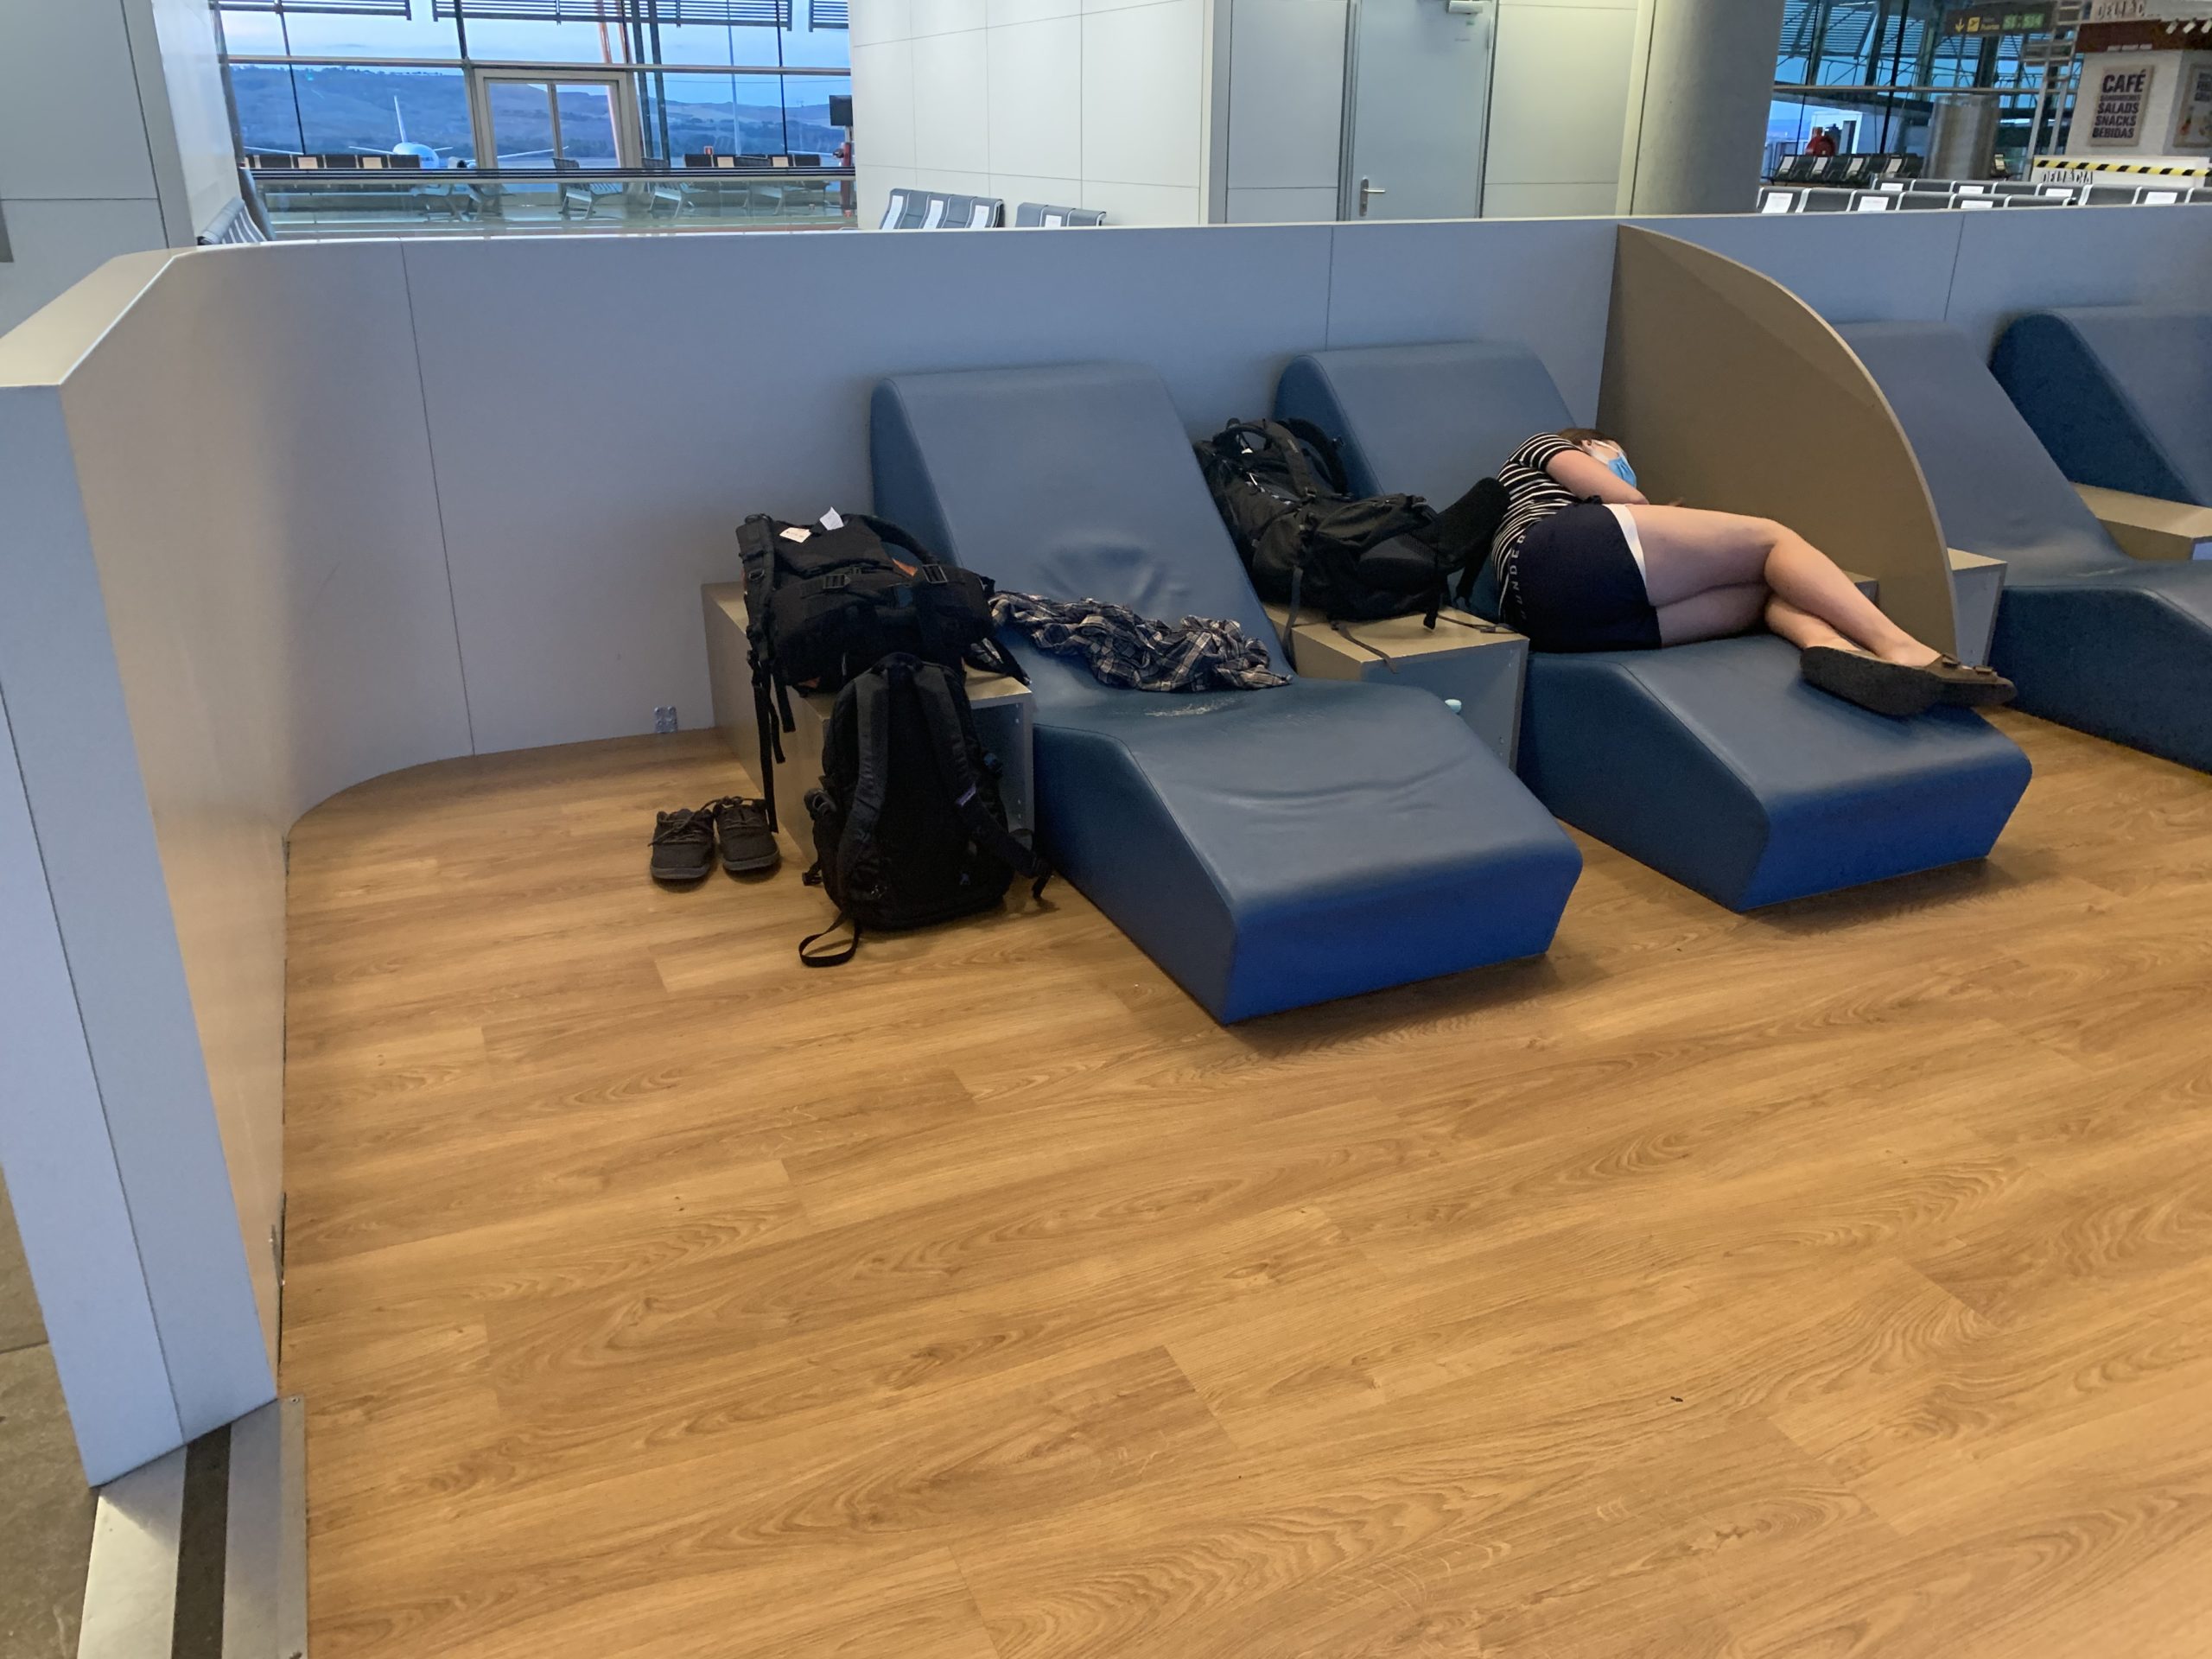 madrid airport overnight layover